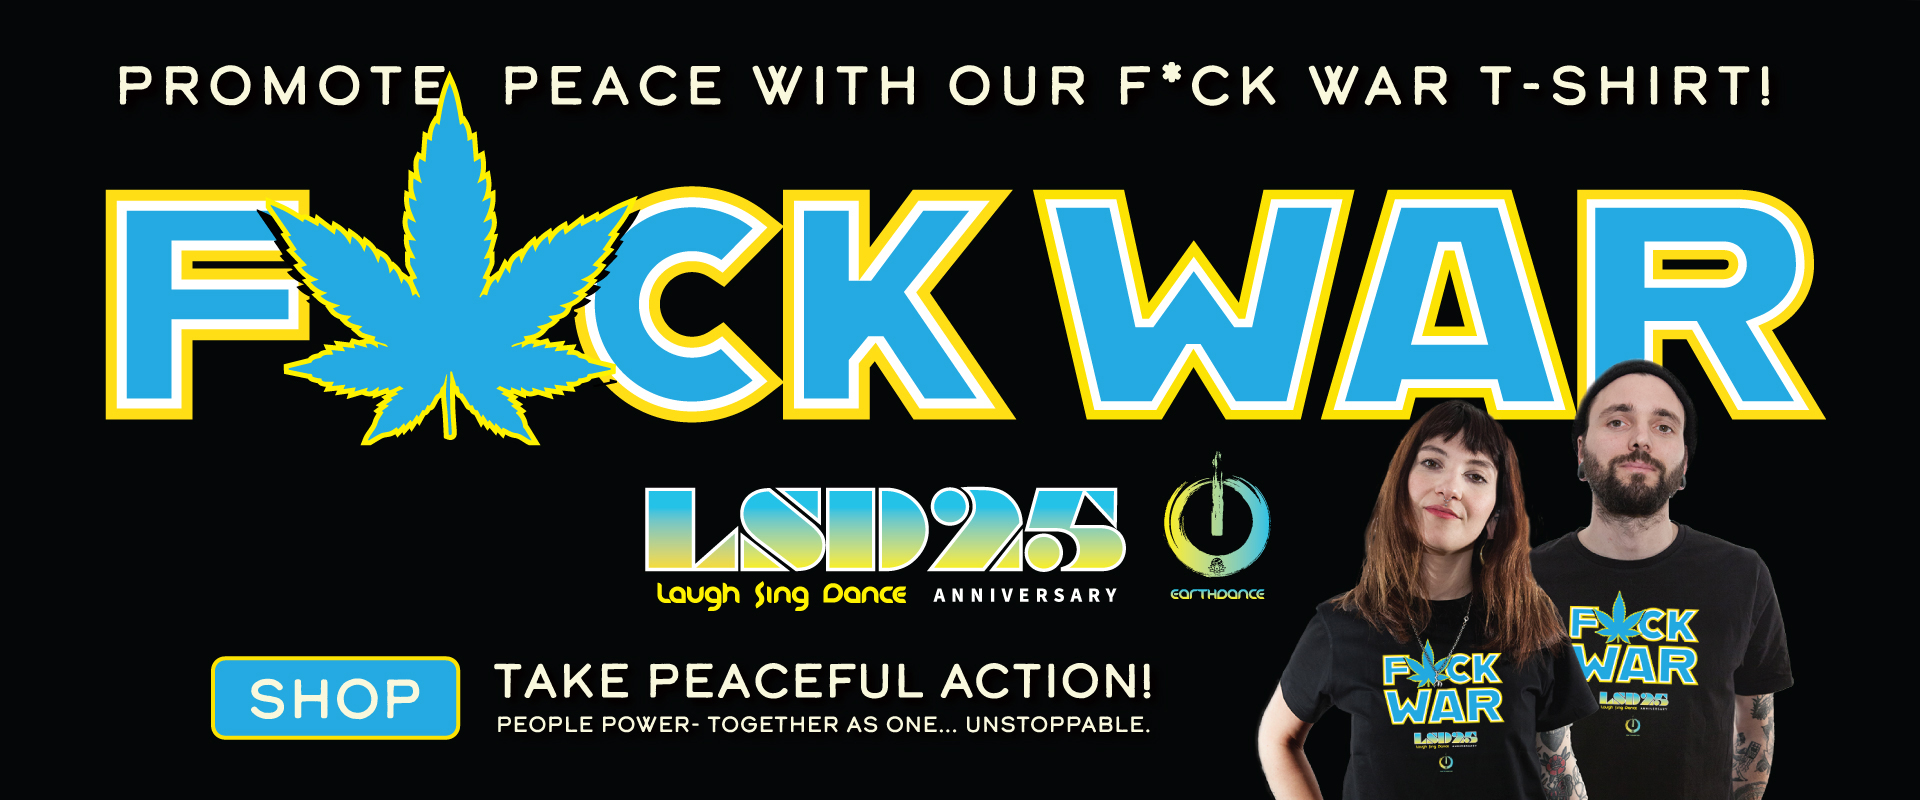 F*ck War LSD25 Anniversary